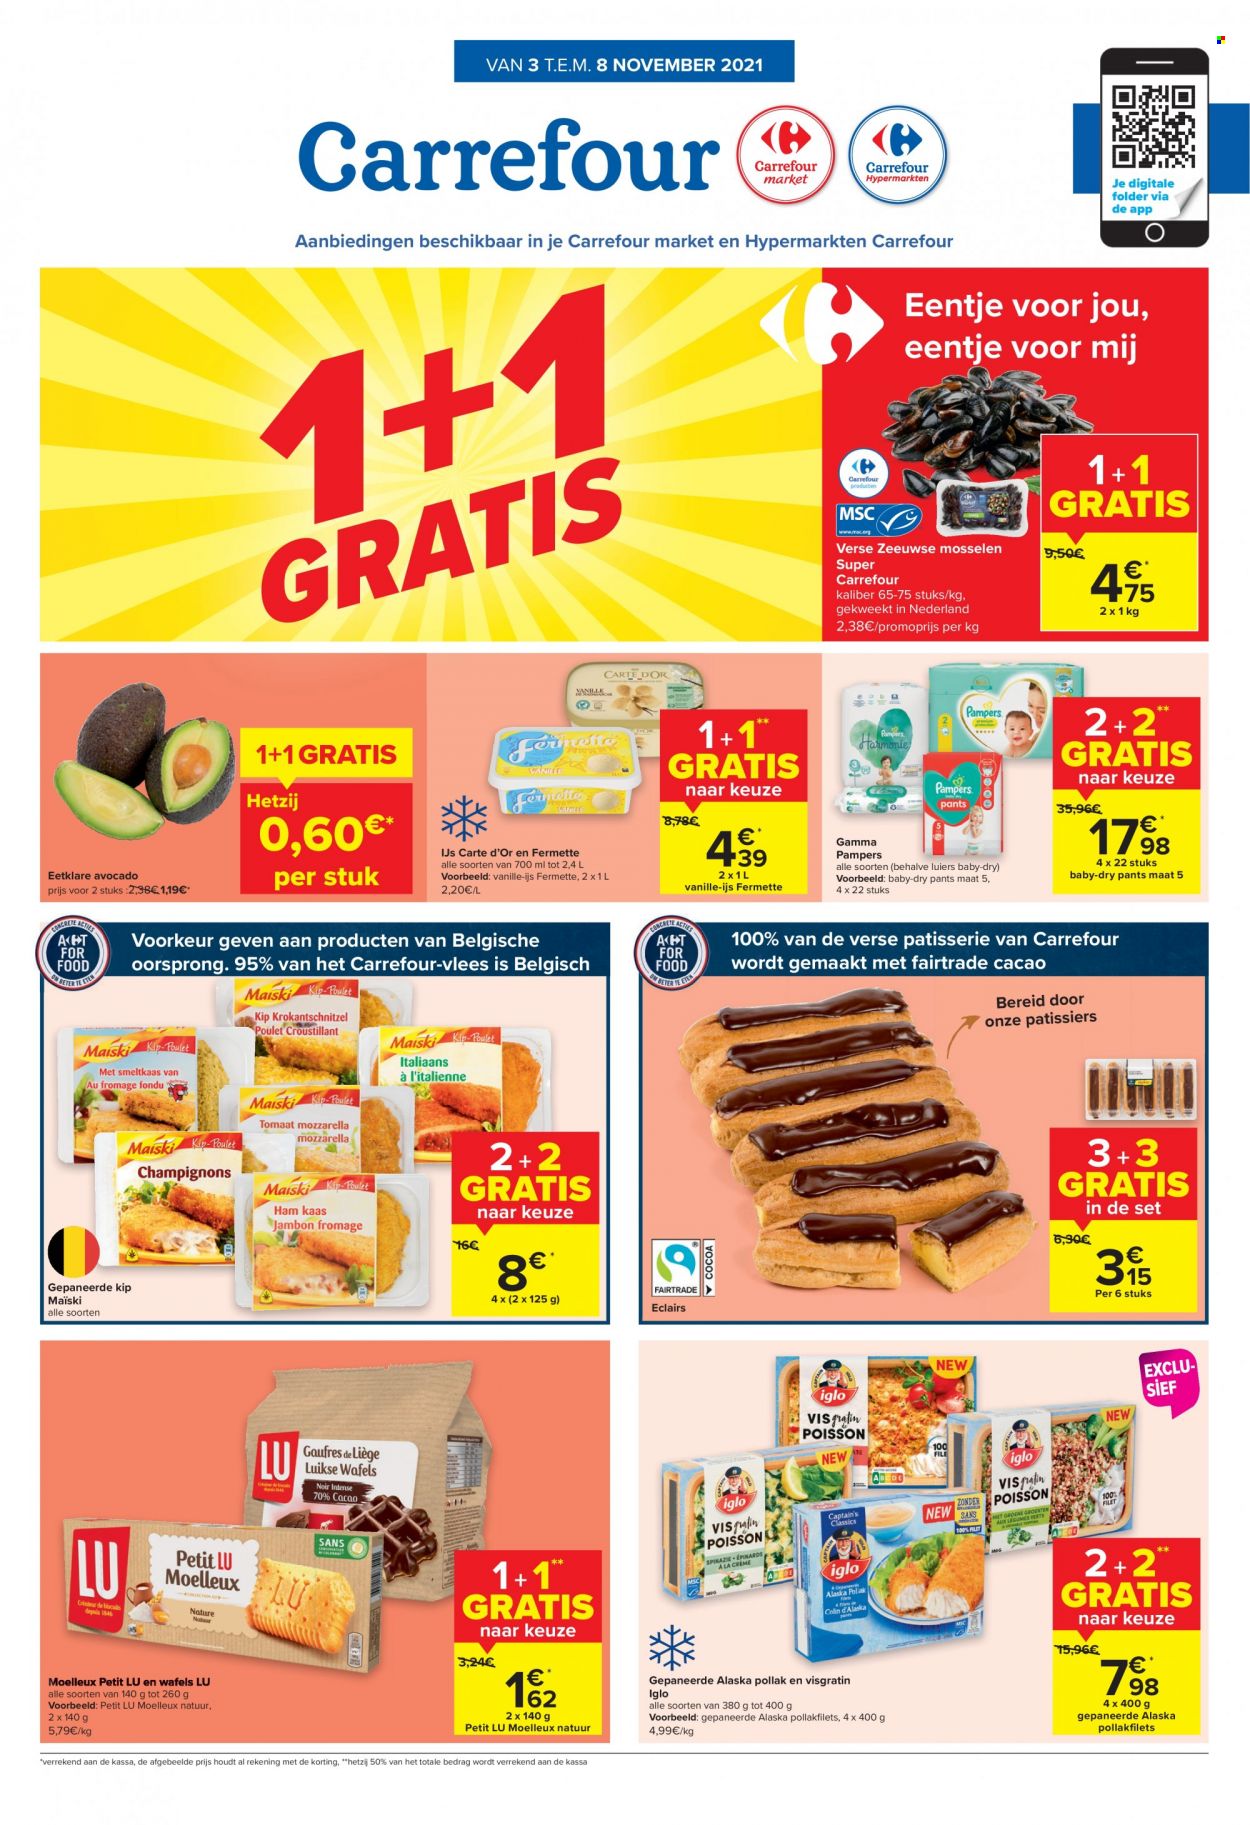 thumbnail - Catalogue Carrefour - 03/11/2021 - 08/11/2021 - Produits soldés - éclair, LU, cacao, Pampers. Page 1.